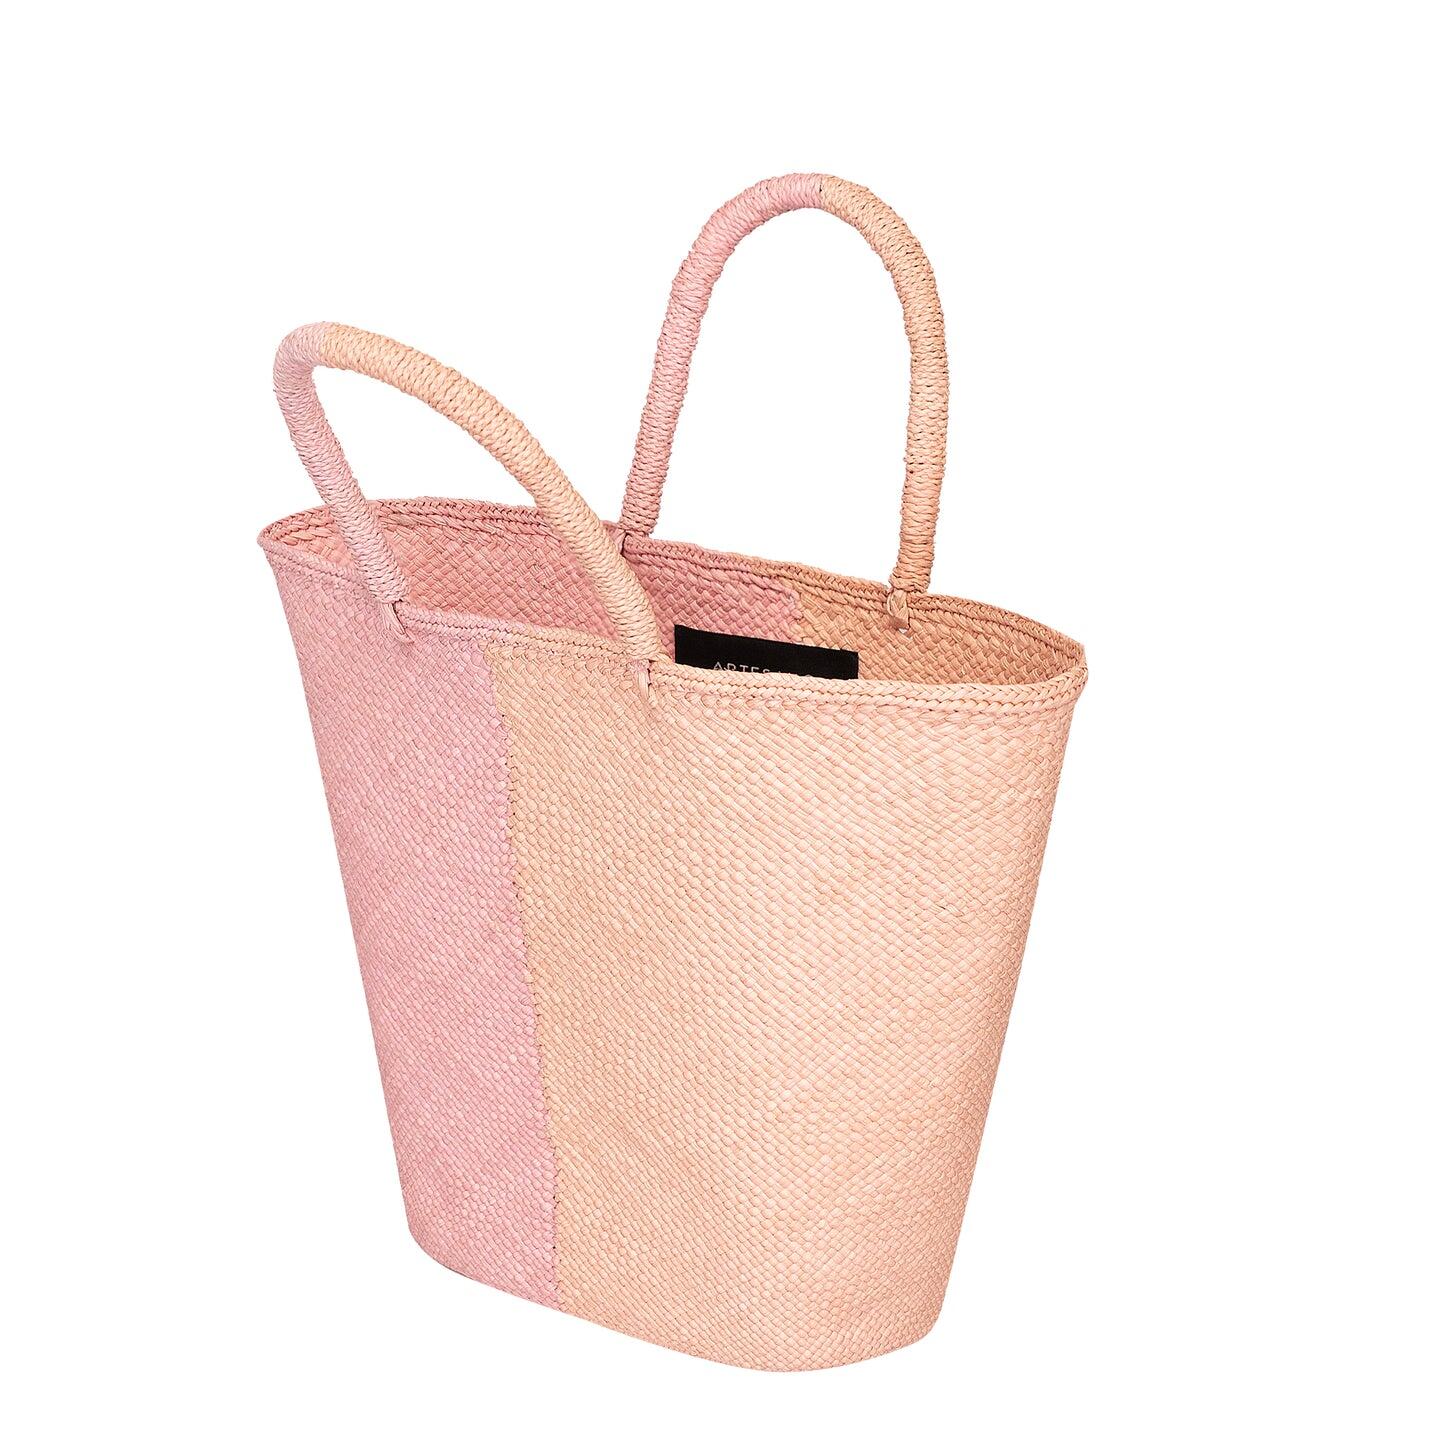 Capri Small Straw Two-Tone Tote Small Bag Pink & Coral